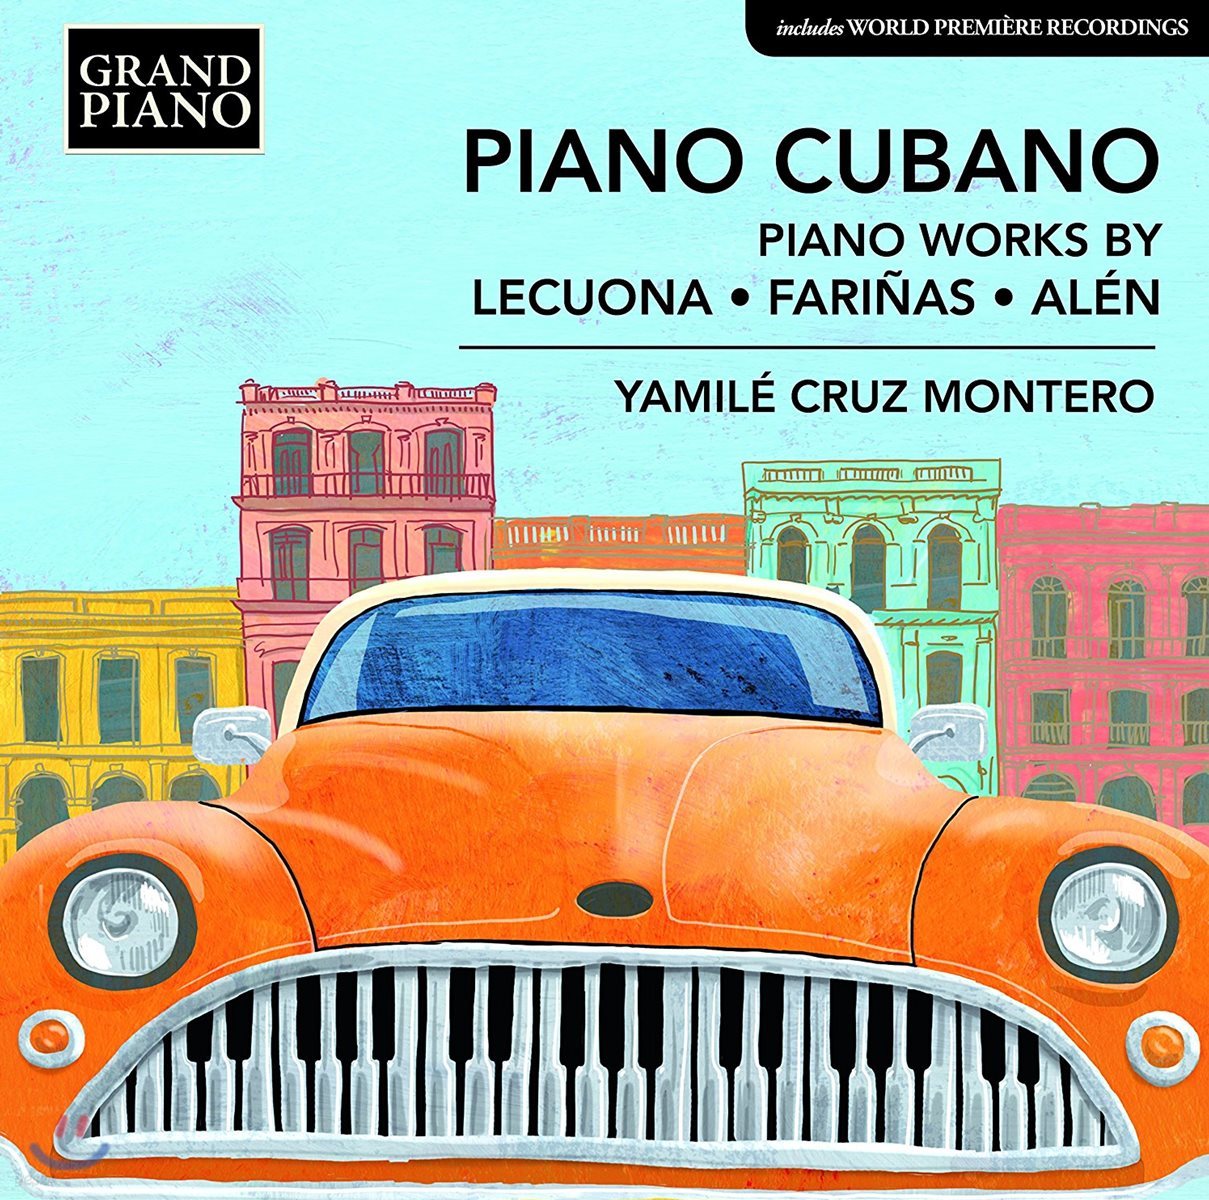 Yamile Cruz Montero 쿠바의 피아노 음악 - 레쿠오나 / 파리냐스 / 알렌 (Piano Cubano - Piano Works By Lecuona / Farinas / Alen)